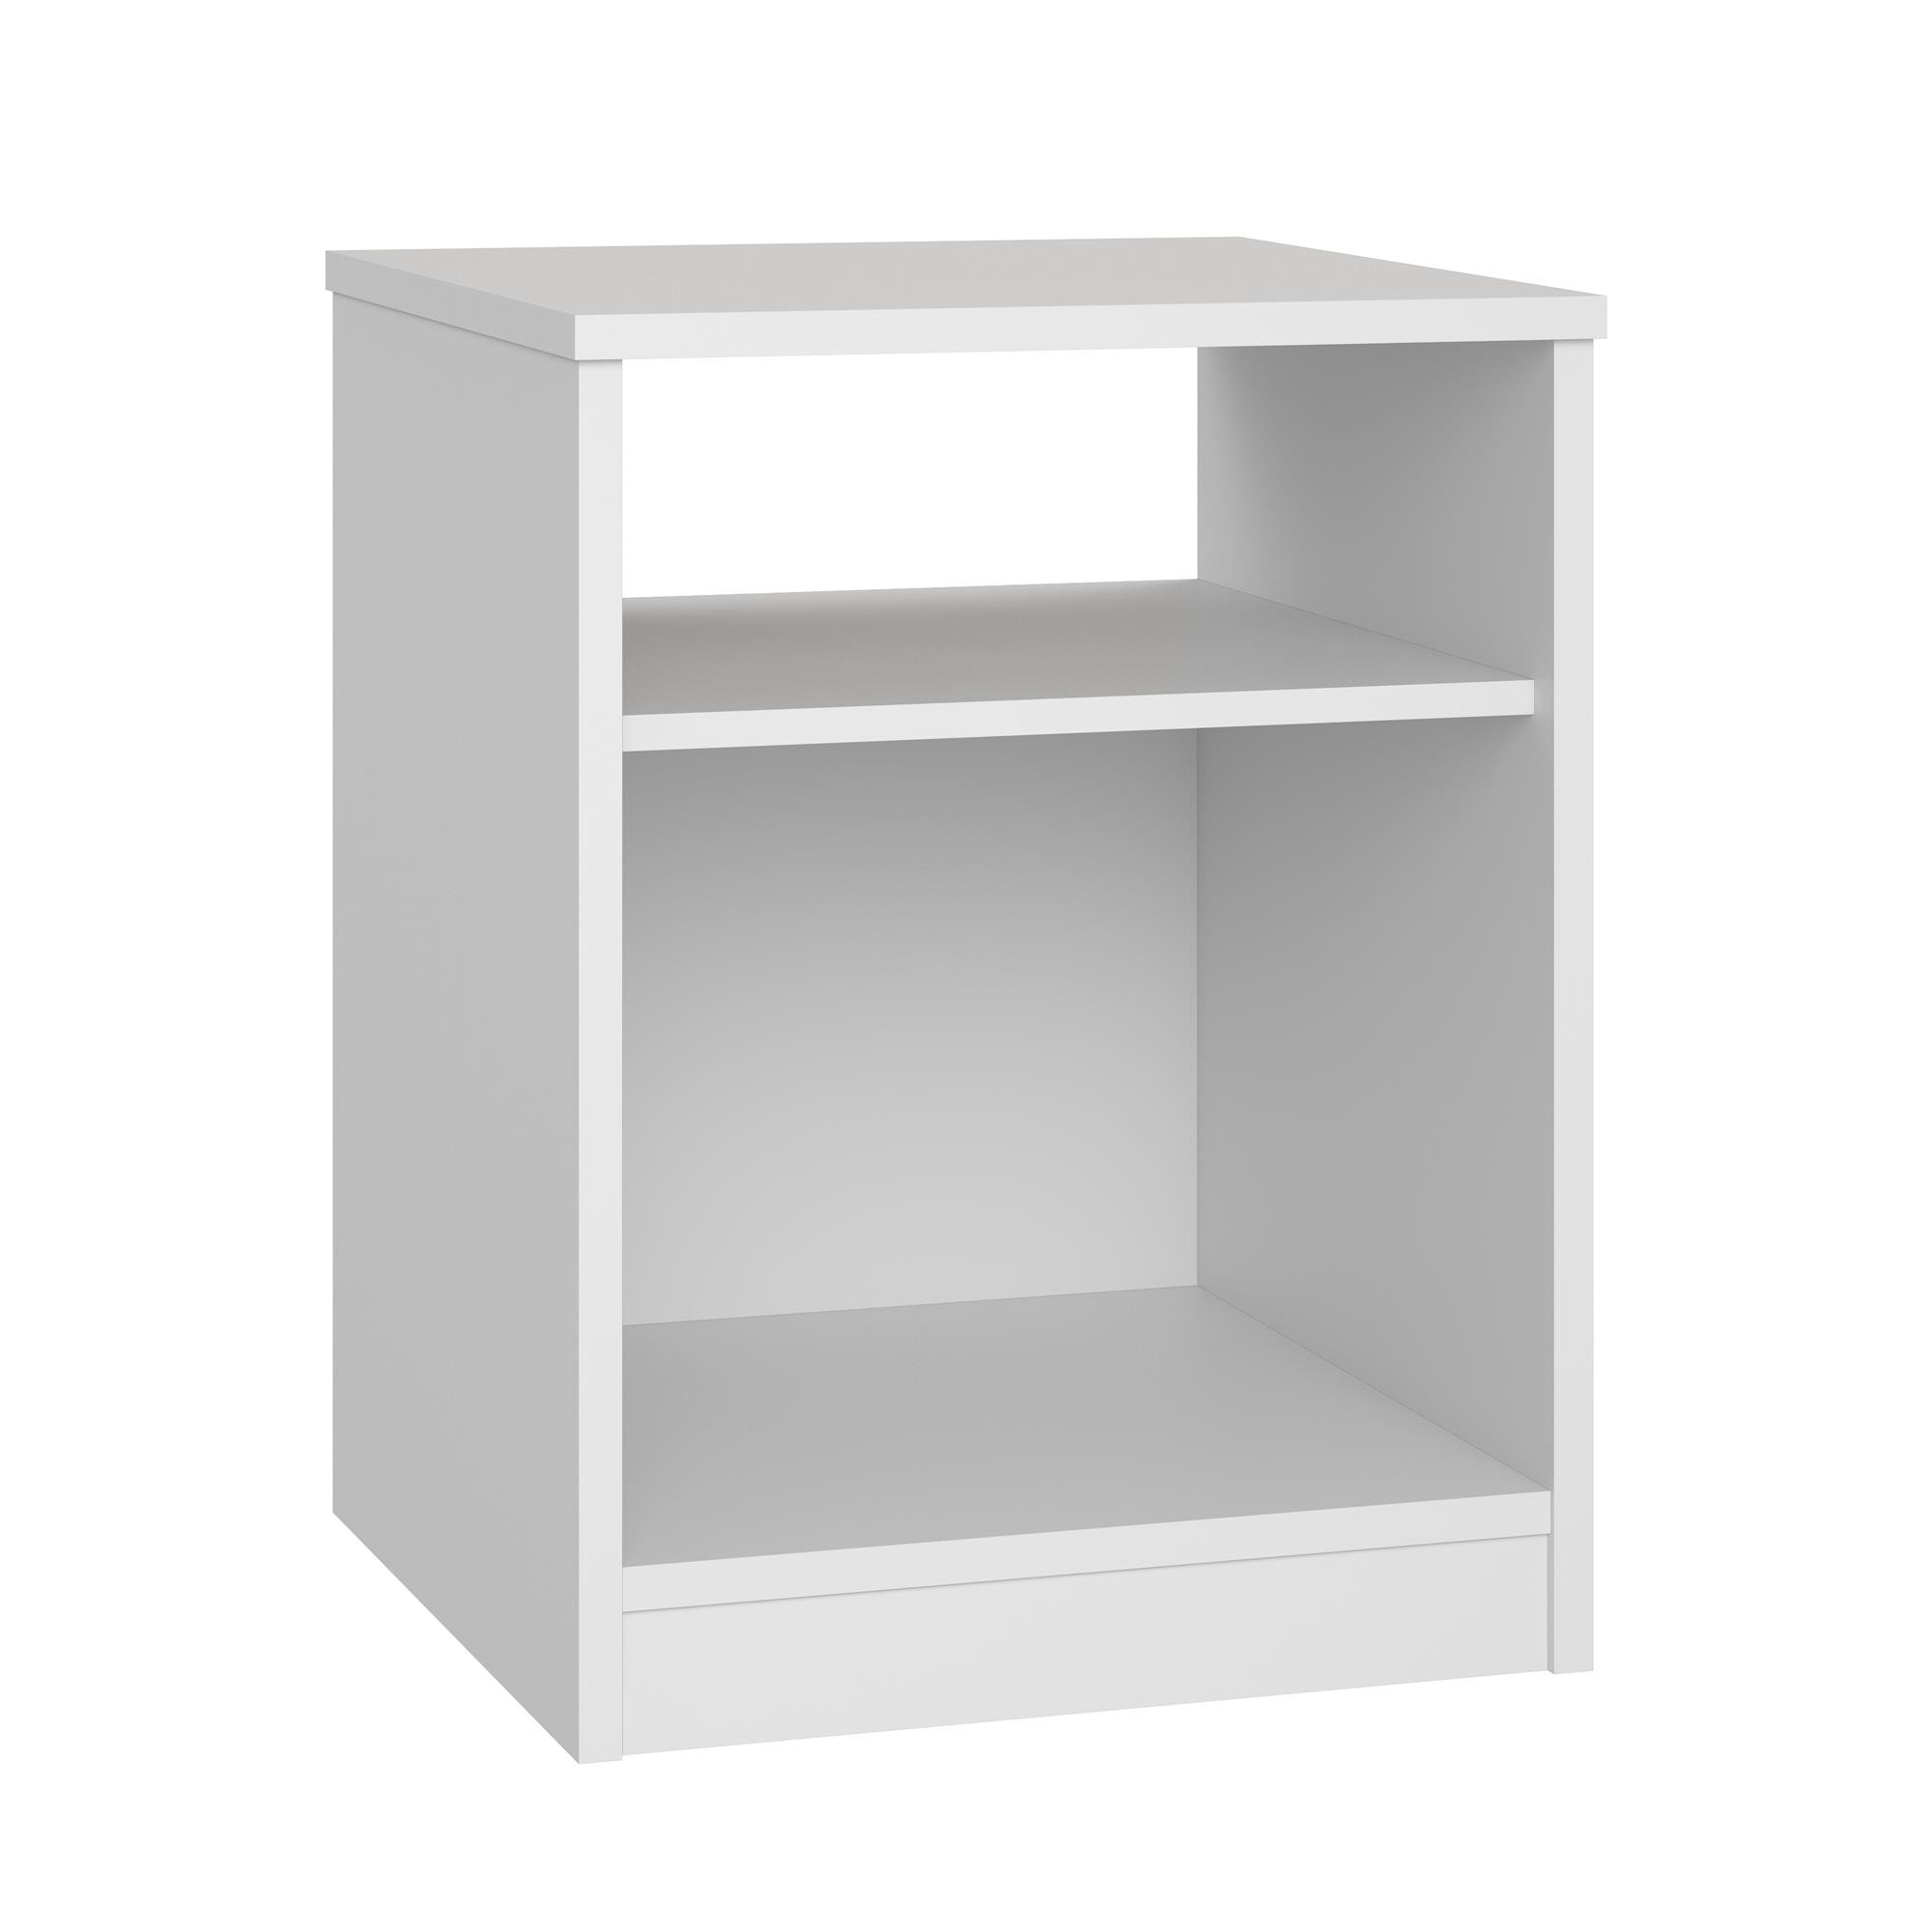 Mainstays Open Shelf Nightstand, White - image 4 of 5